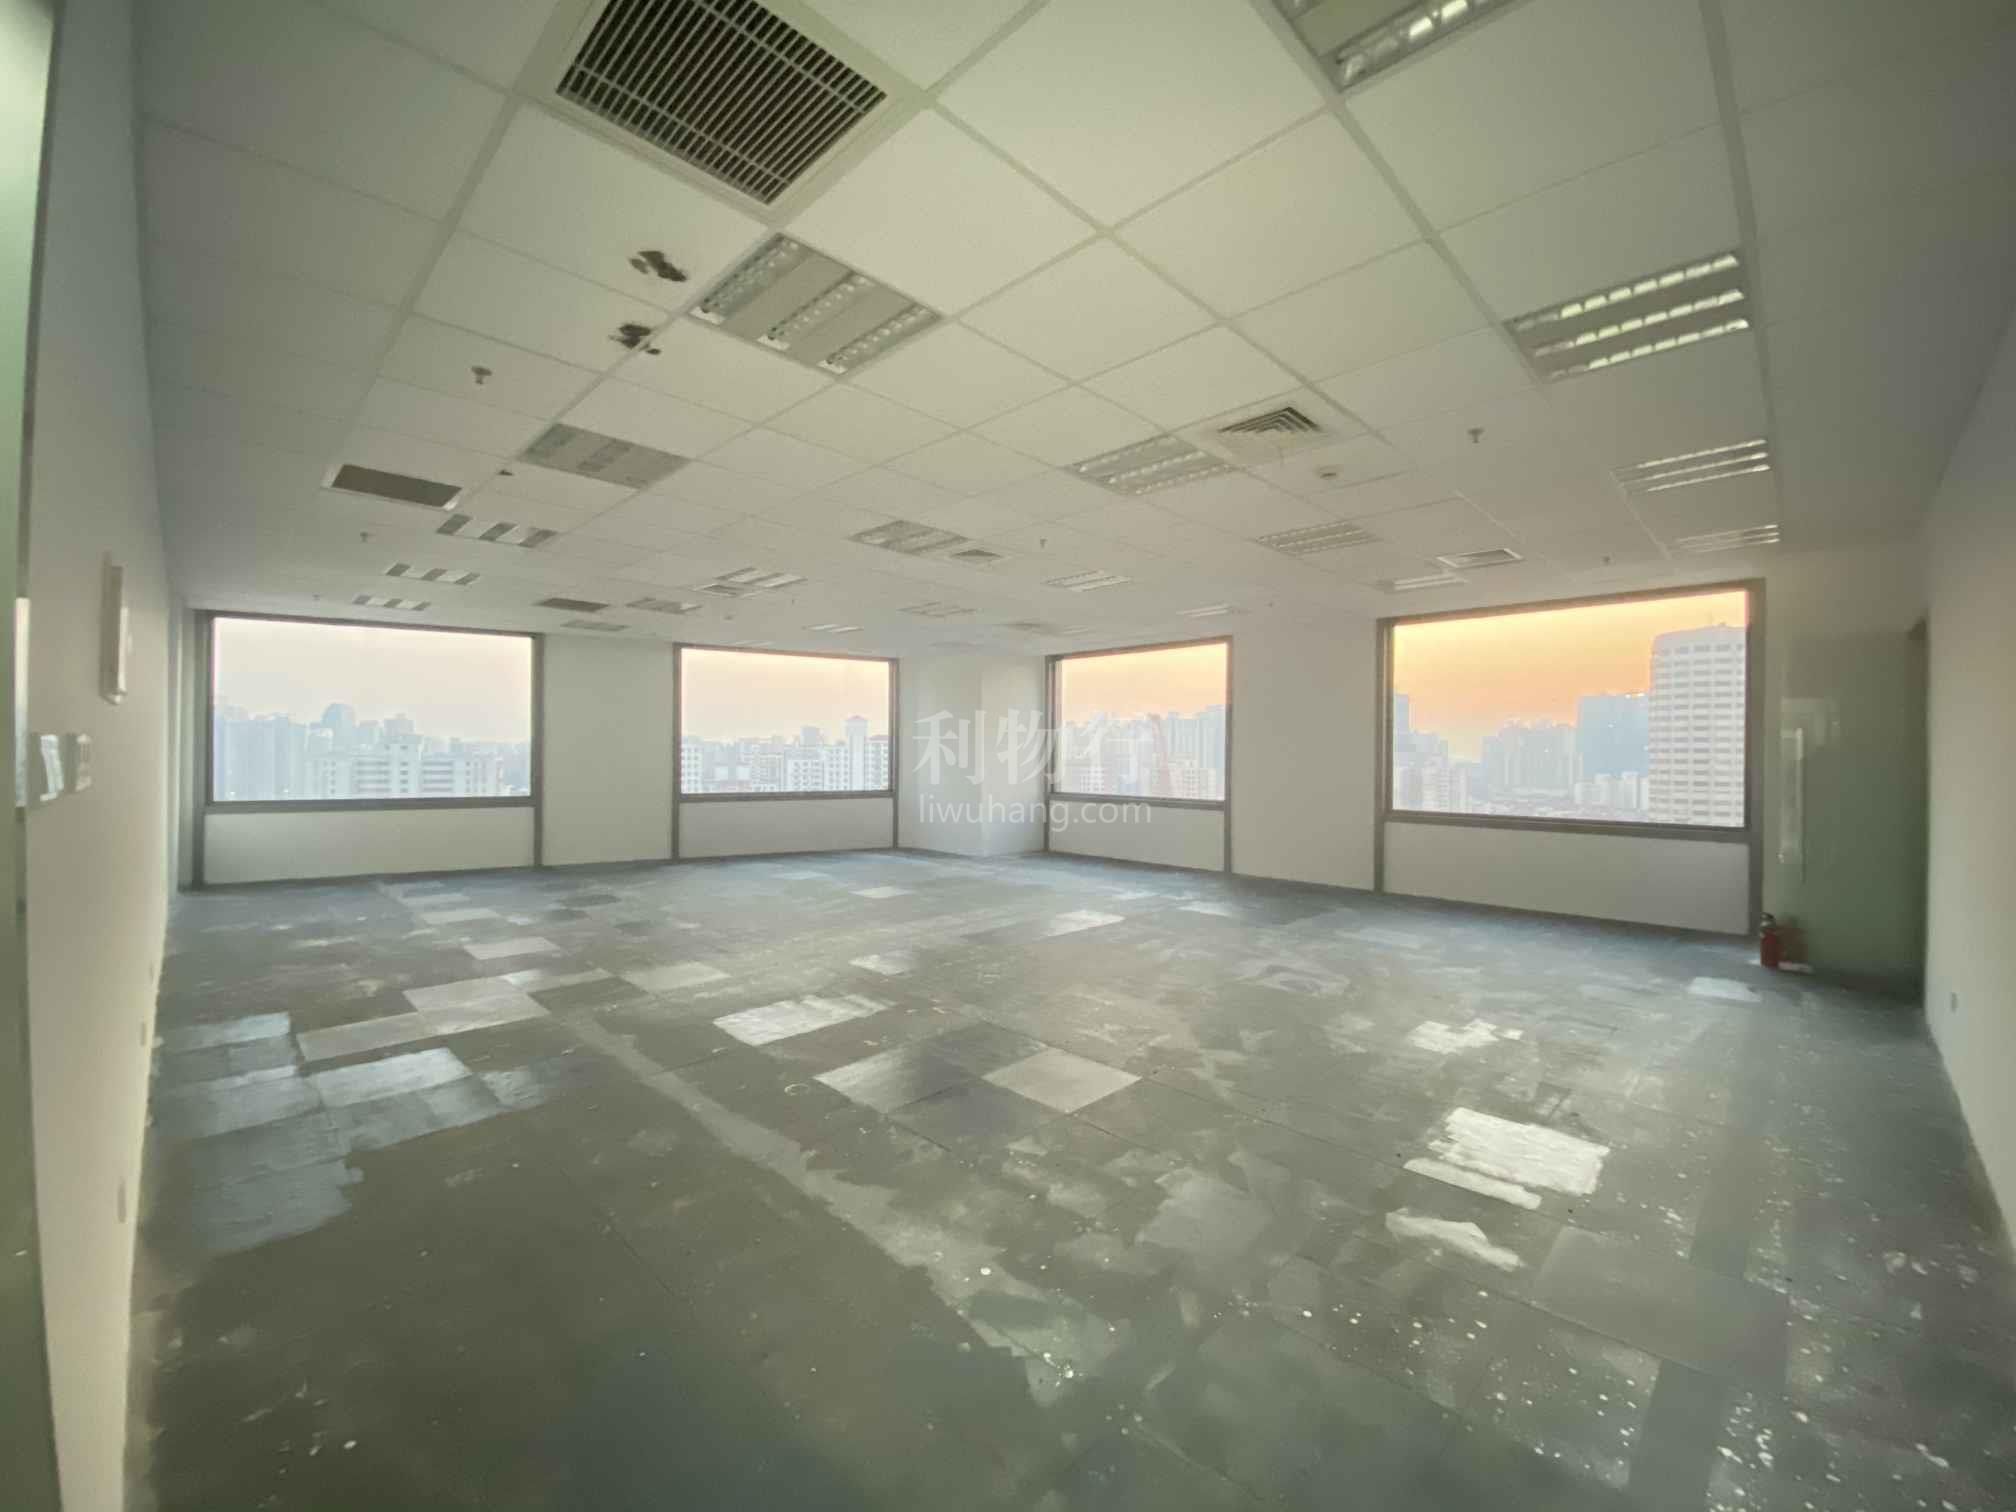 龙之梦雅仕大厦写字楼350m2办公室7.00元/m2/天 中等装修